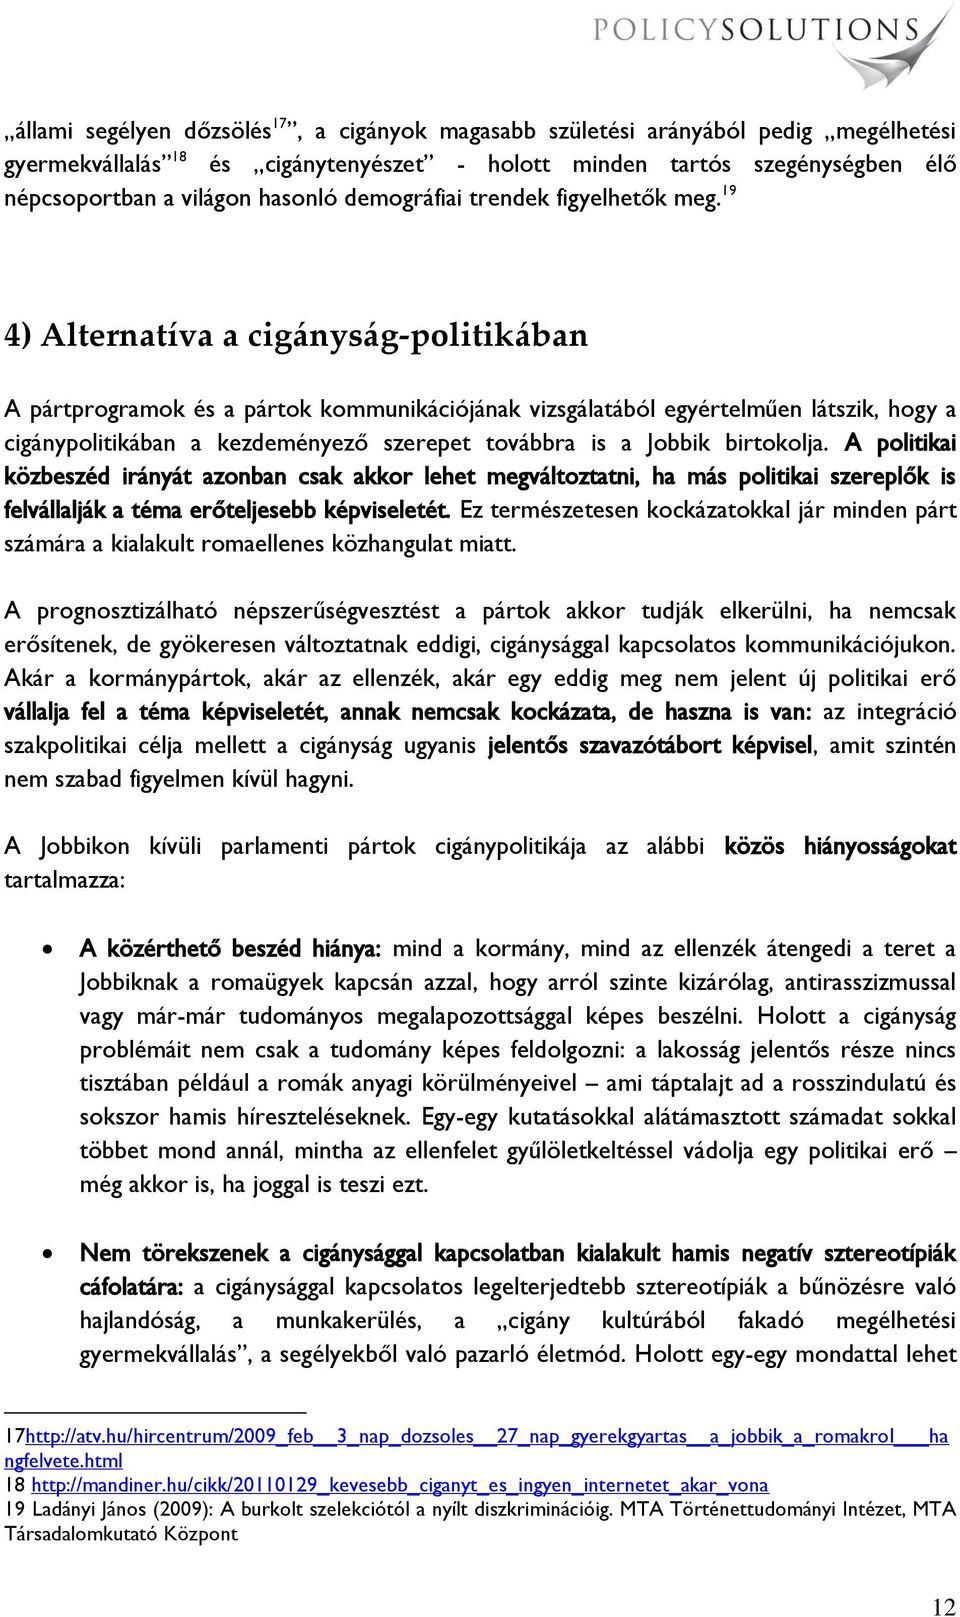 19 4) Alternatíva a cig{nys{g-politik{ban A pártprogramok és a pártok kommunikációjának vizsgálatából egyértelműen látszik, hogy a cigánypolitikában a kezdeményező szerepet továbbra is a Jobbik